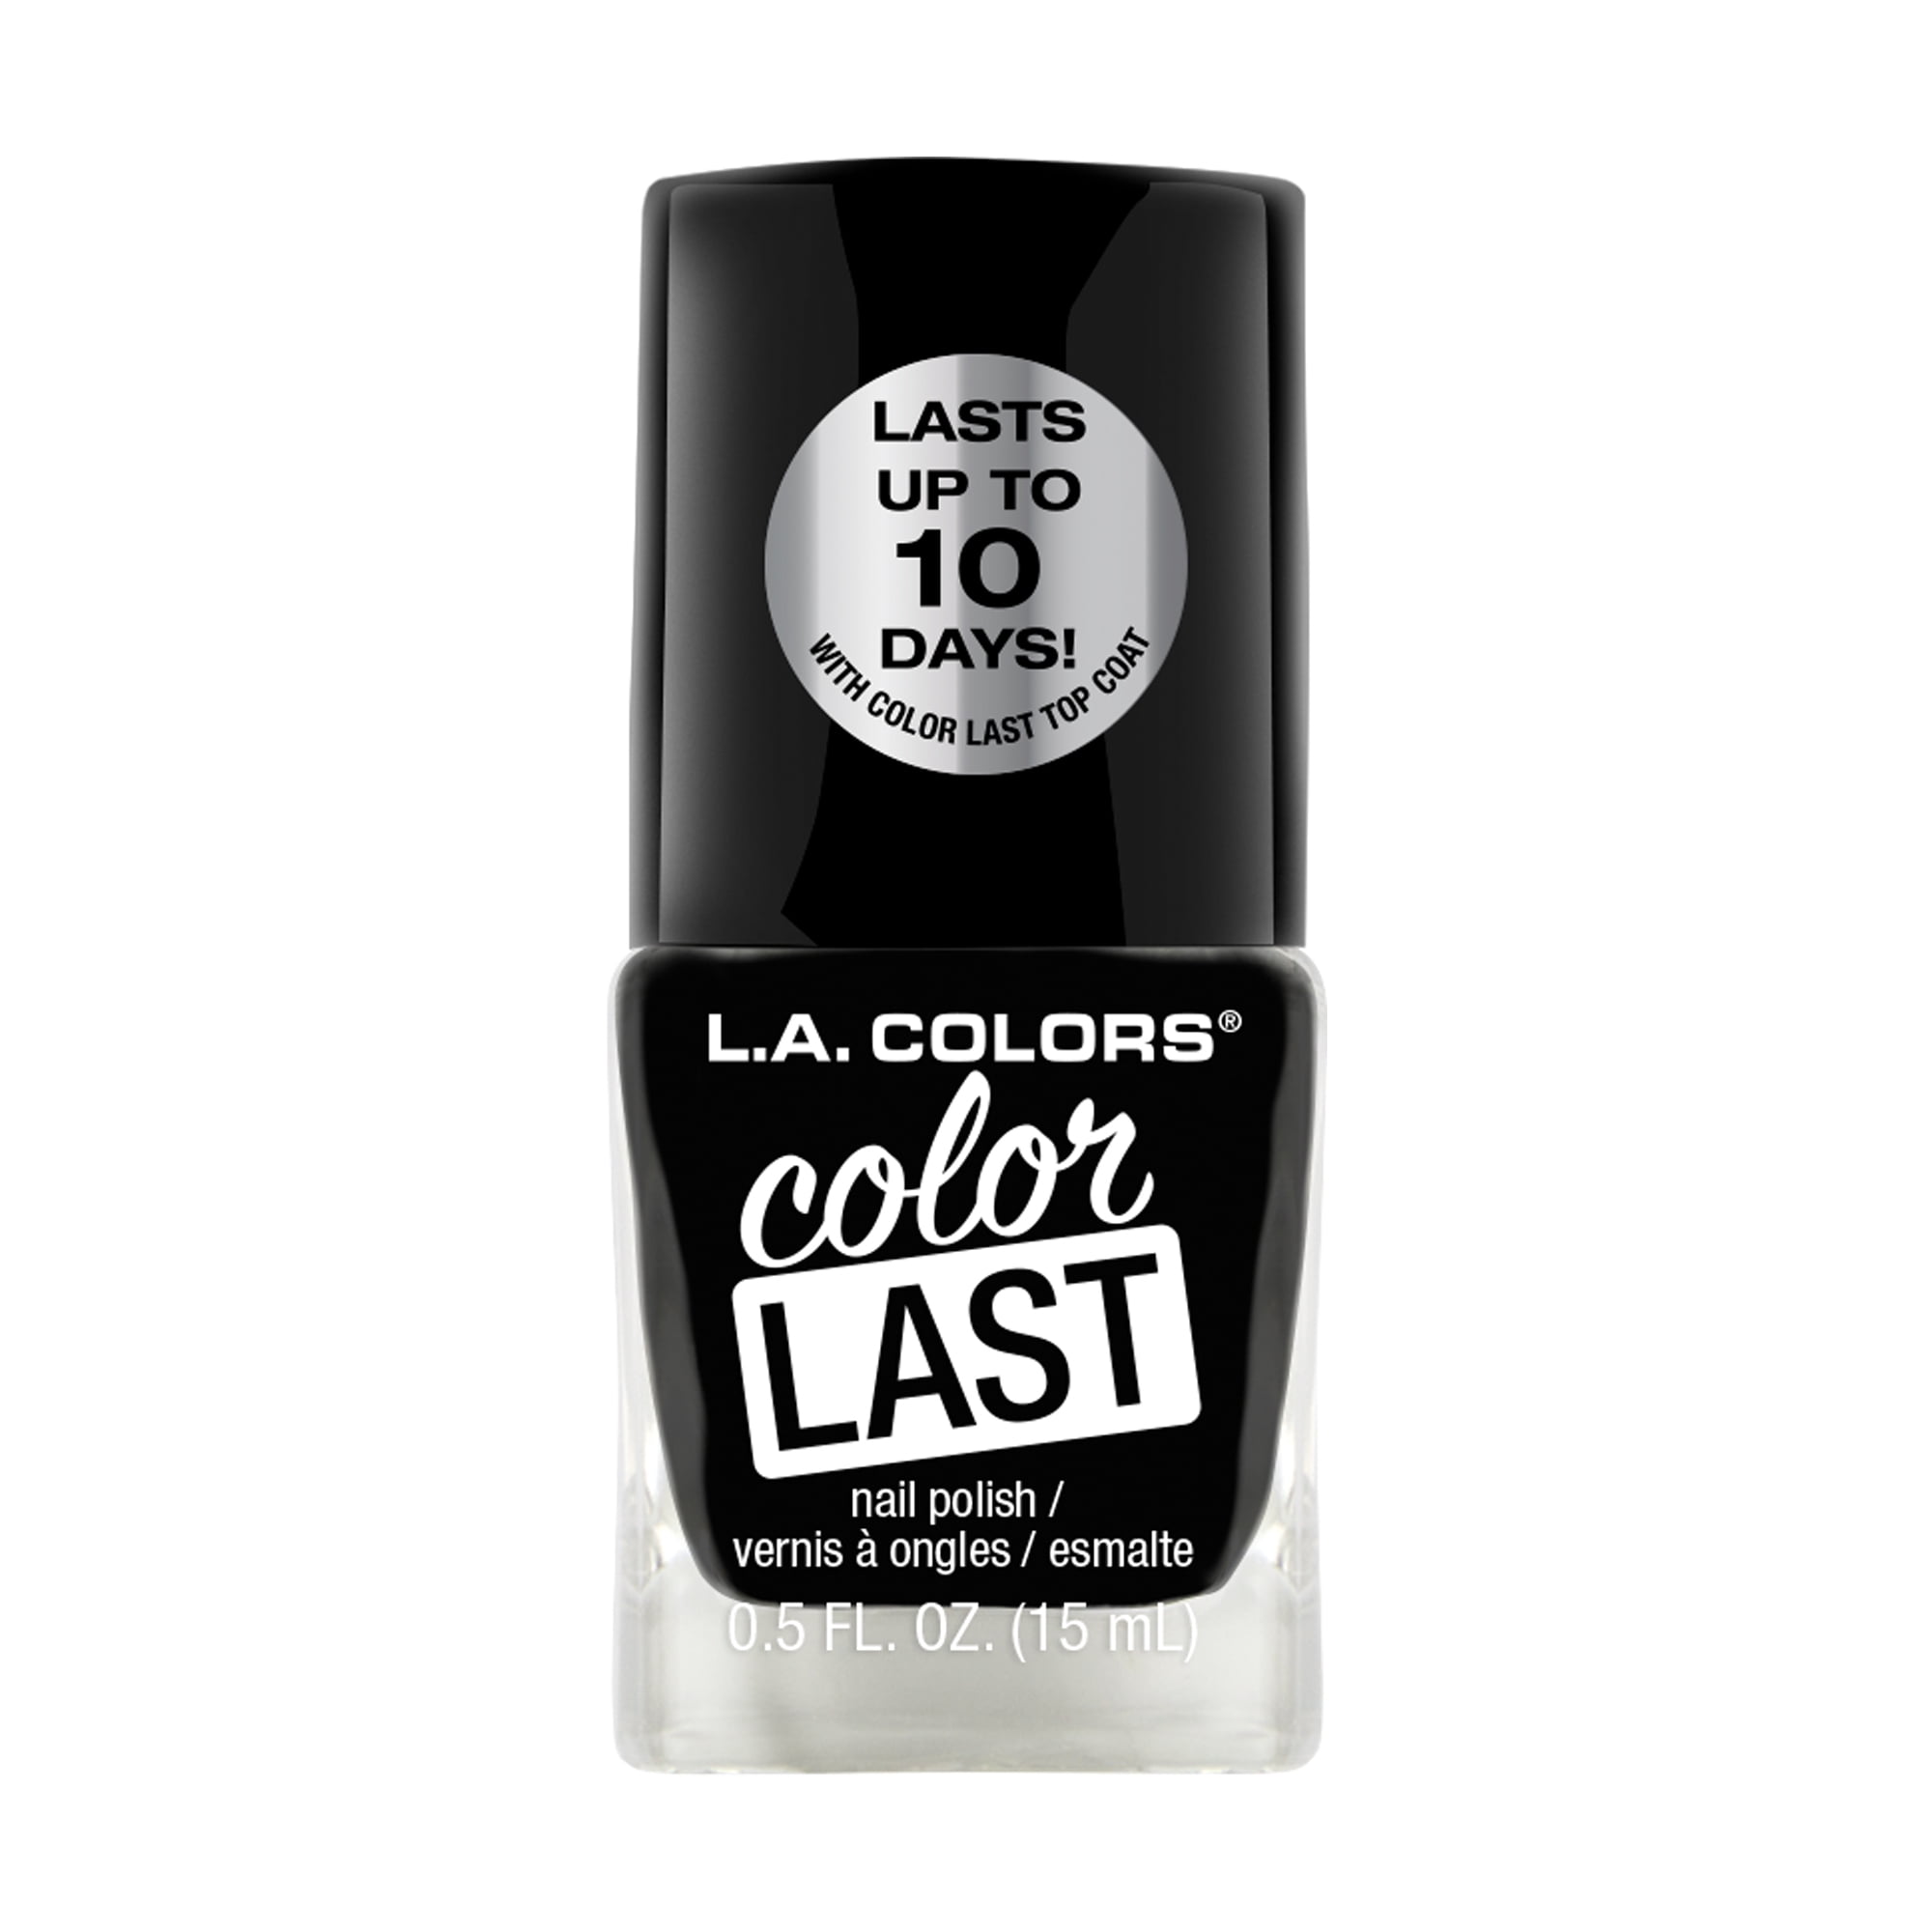 L.A. COLORS Color Last Nail Polish, Onyx, 0.5 fl oz